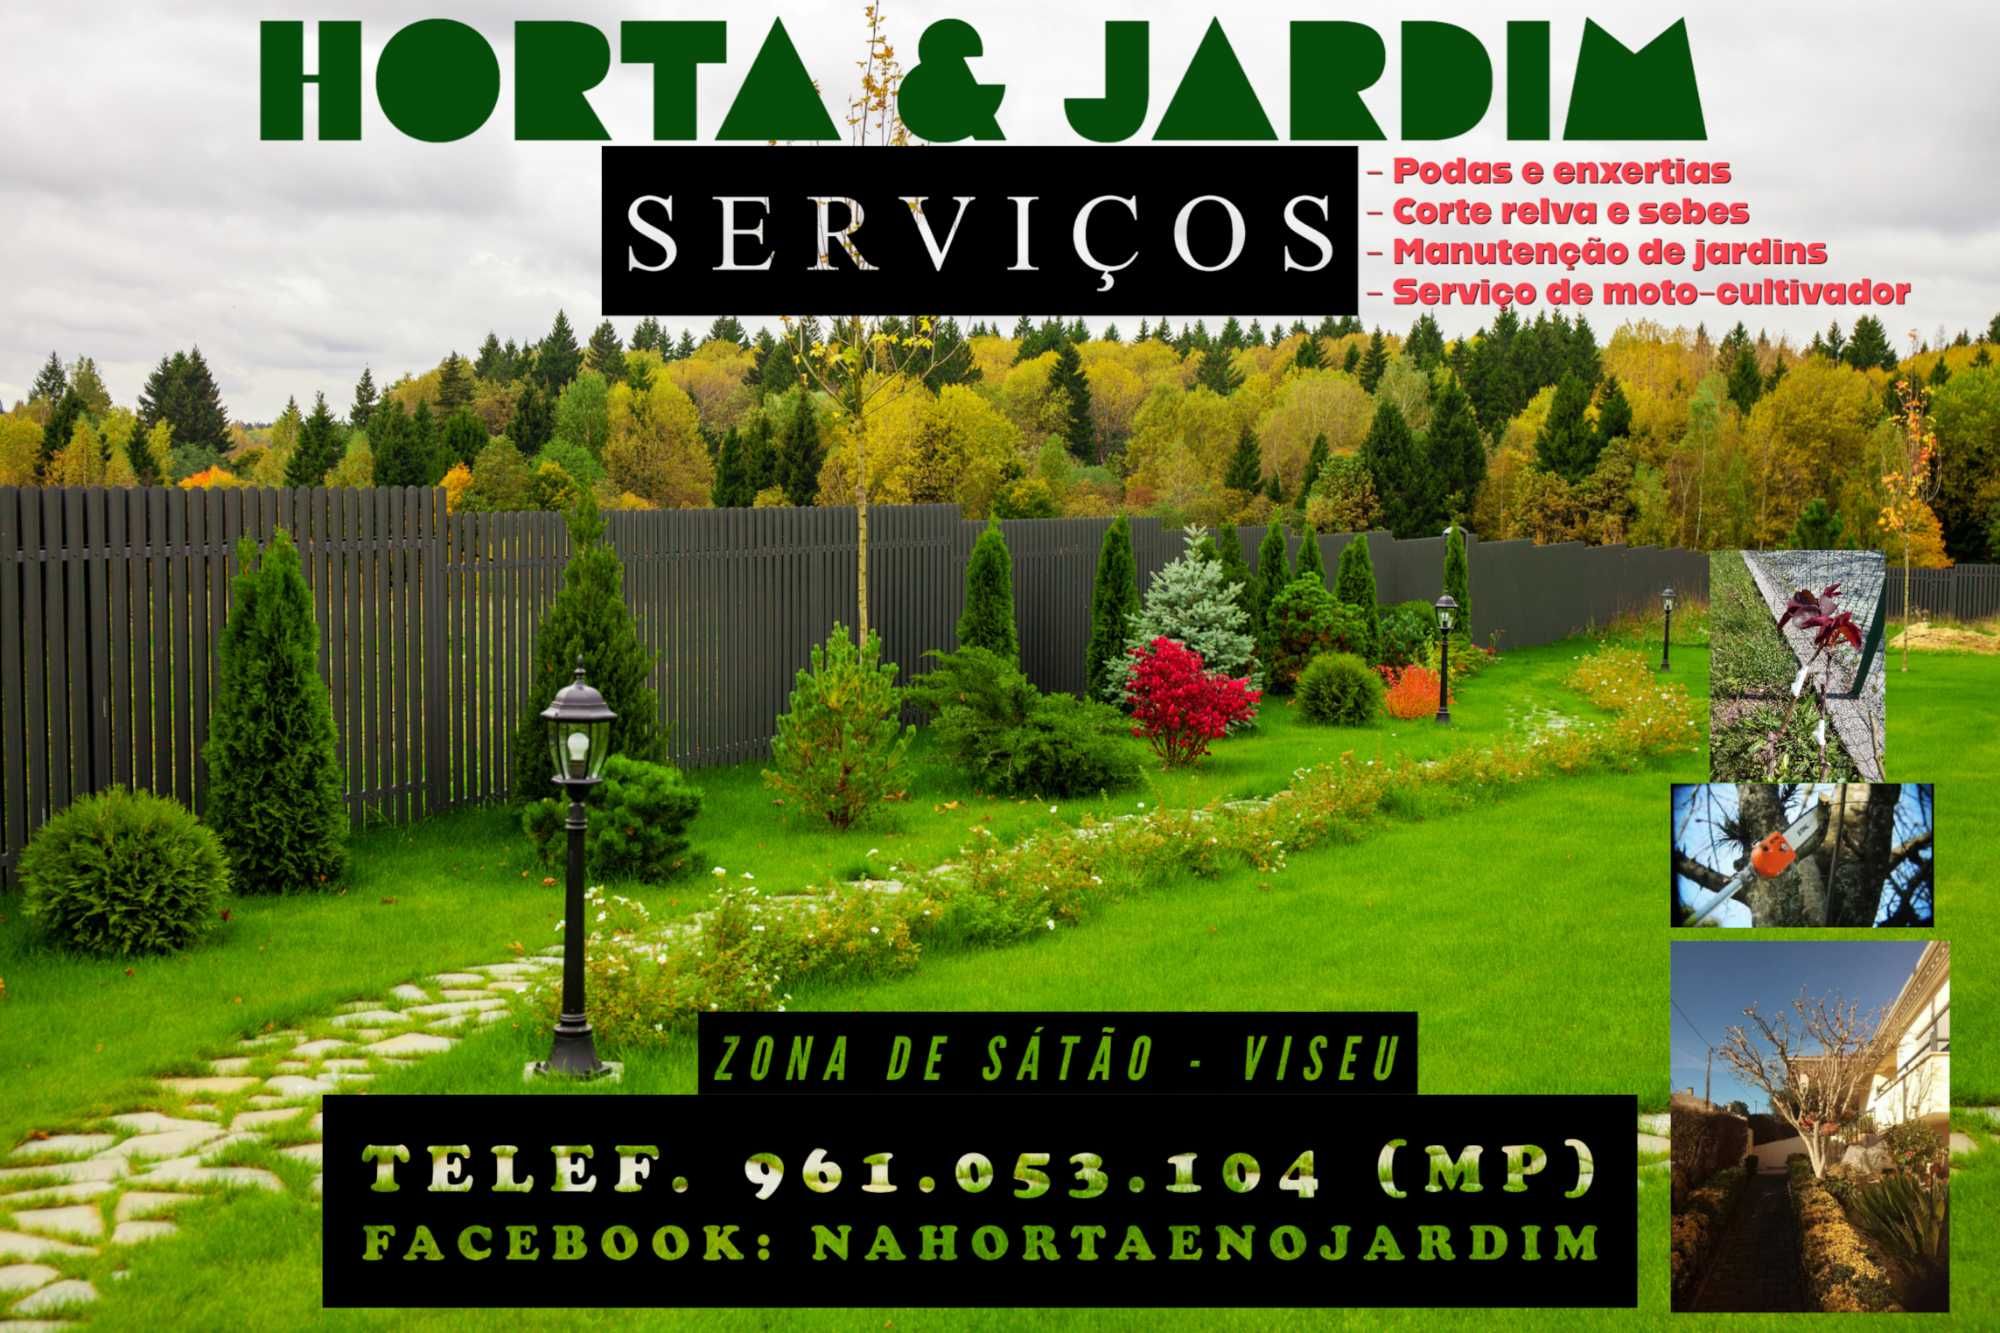 Horta e Jardim - Serviços - Zona de Sátão-Viseu